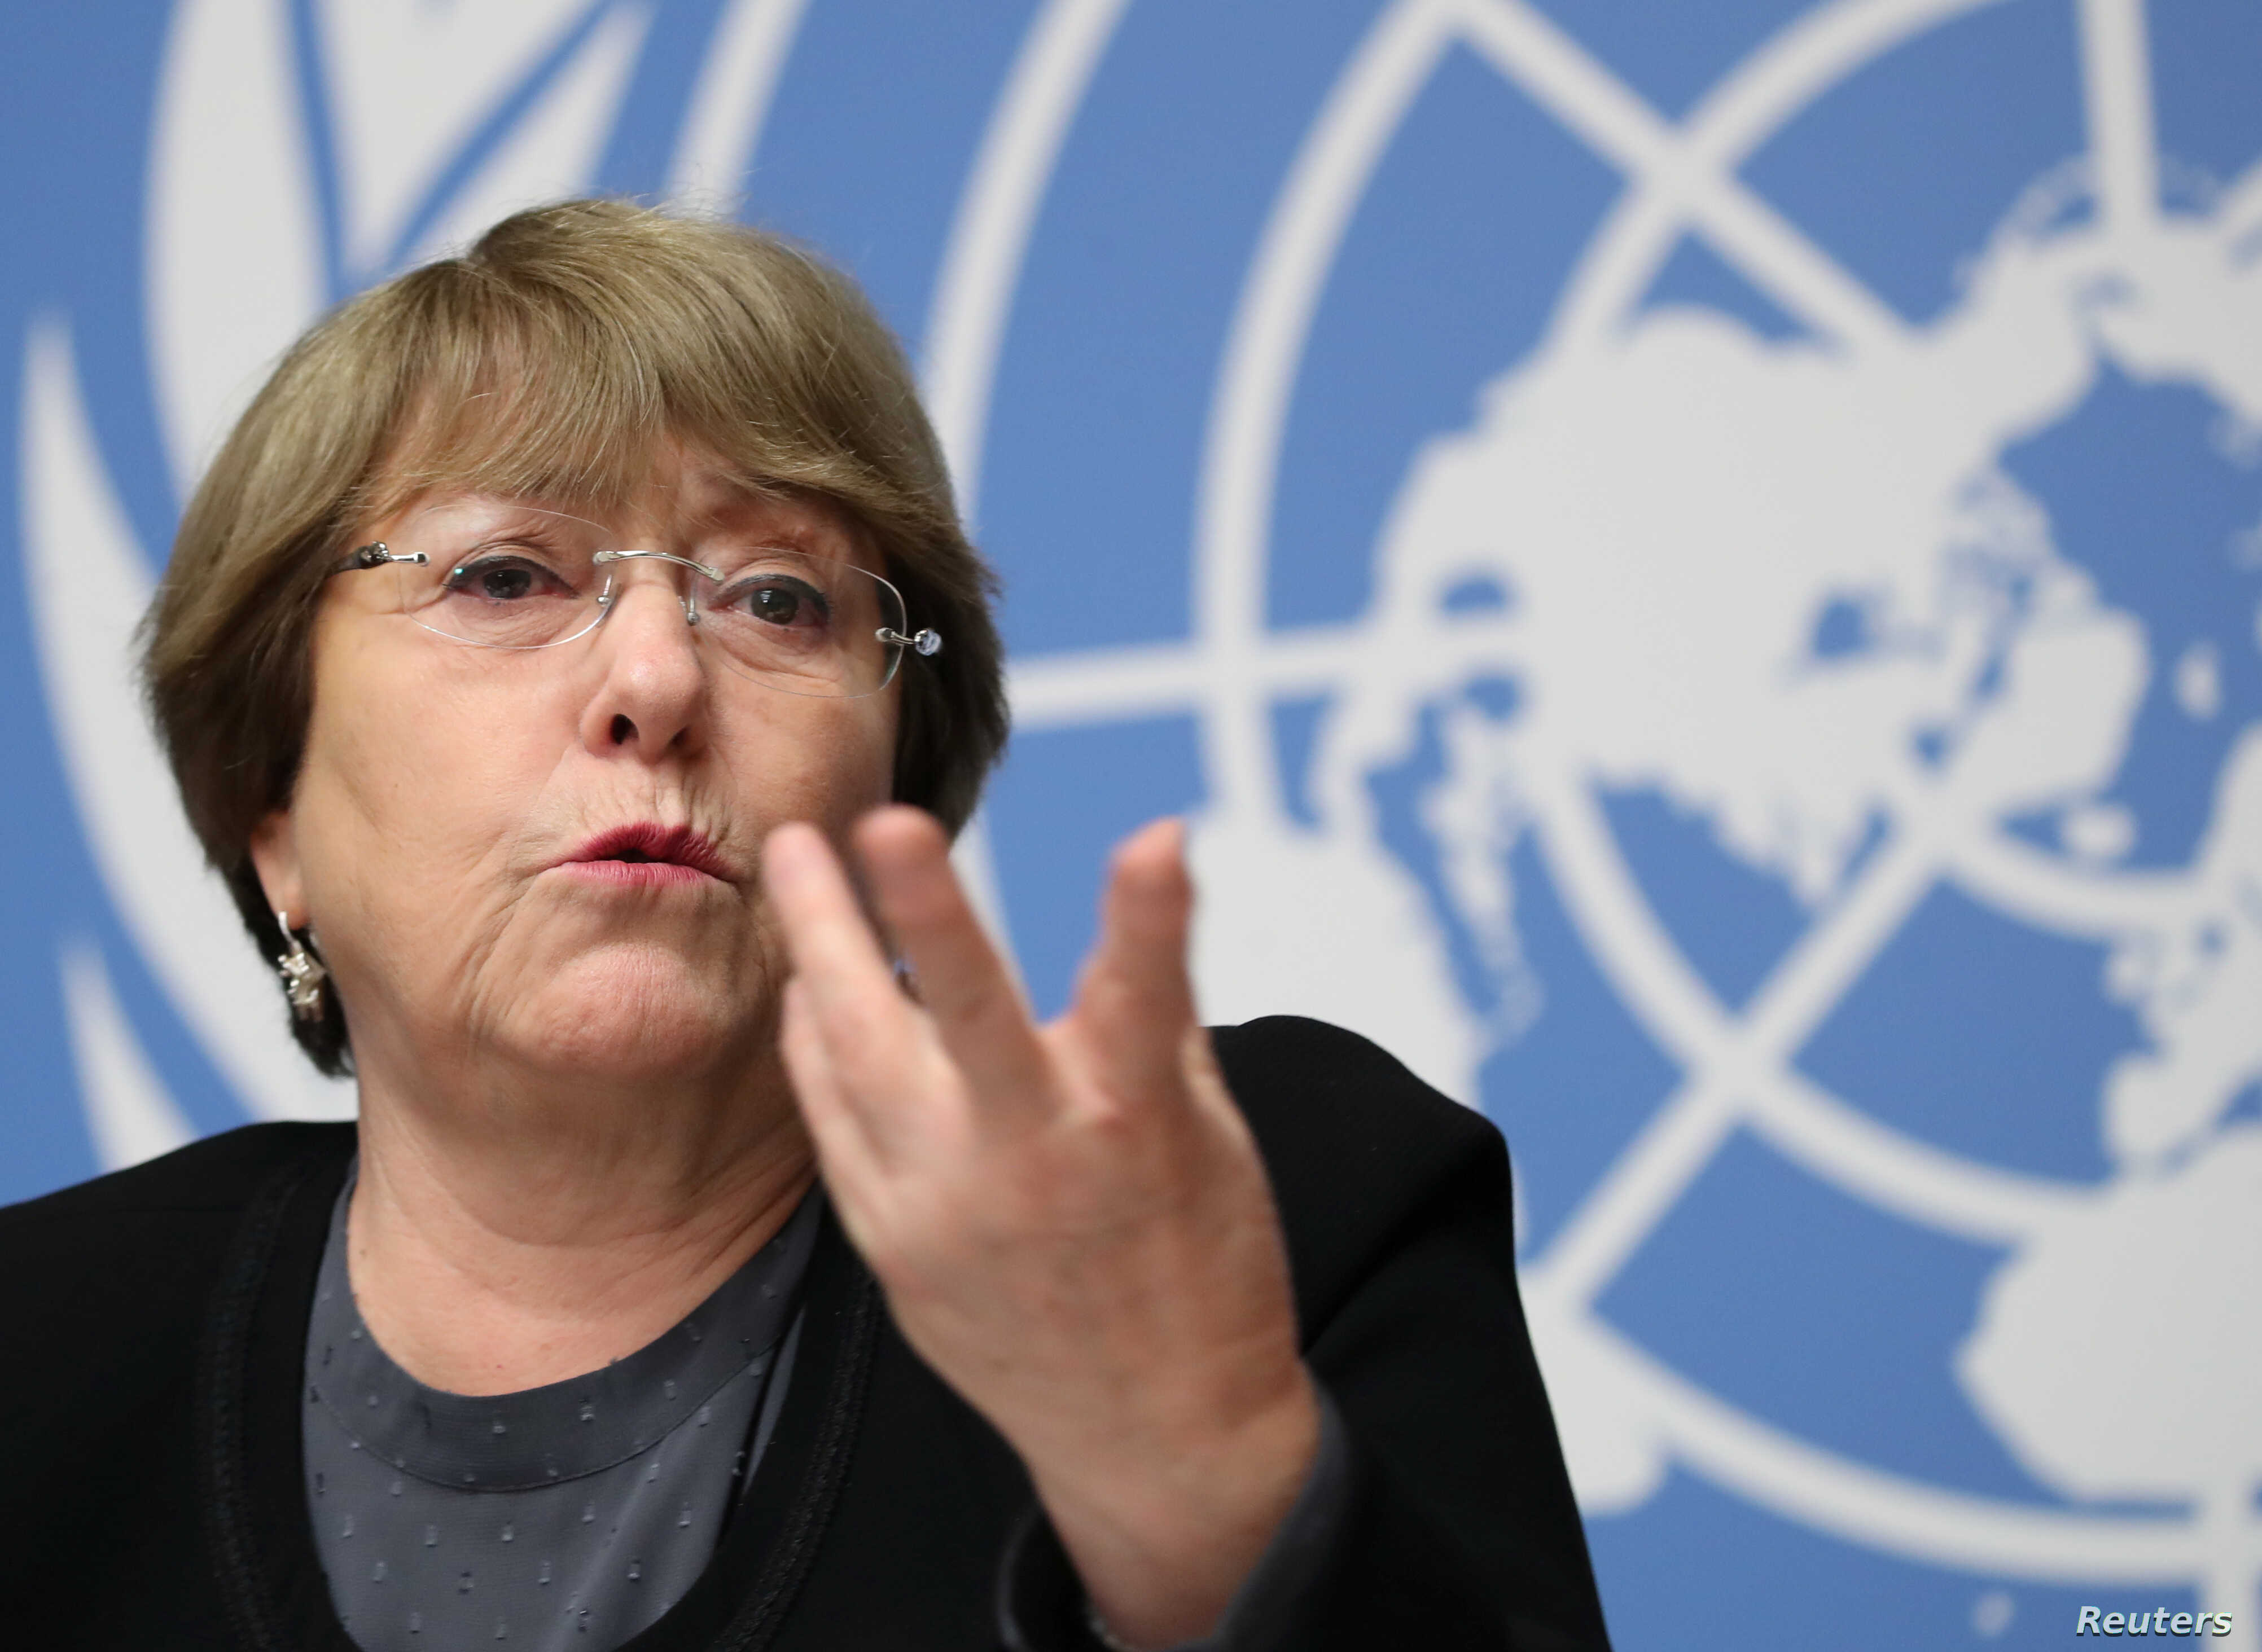 UN-Menschenrechtschefin: Lage in Belarus und Russland wird schlechter